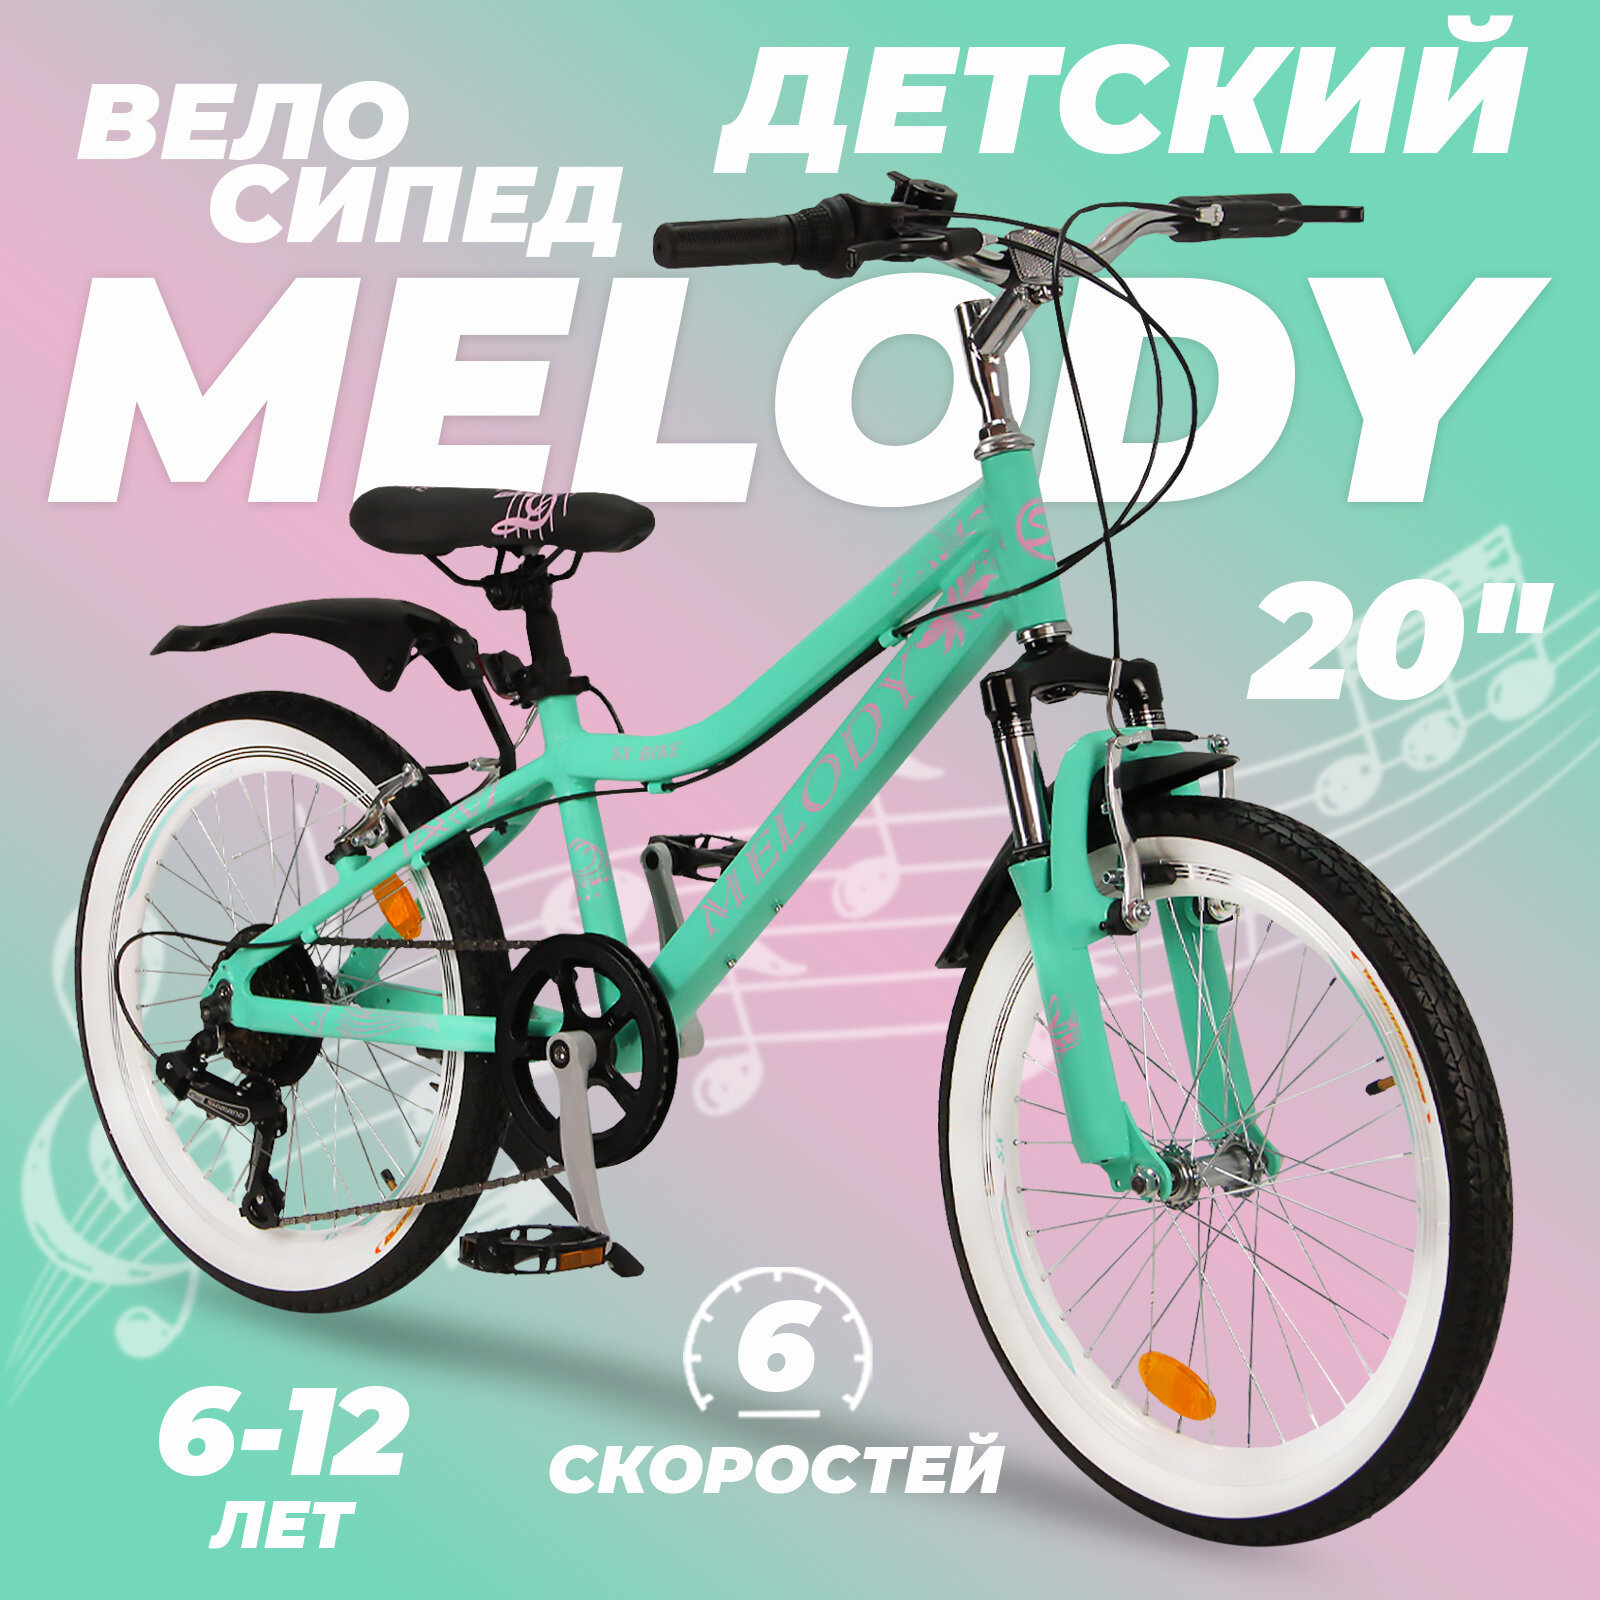 Горный велосипед детский скоростной Melody 20" бирюзовый, 6-12 лет, 6 скоростей (Shimano tourney)